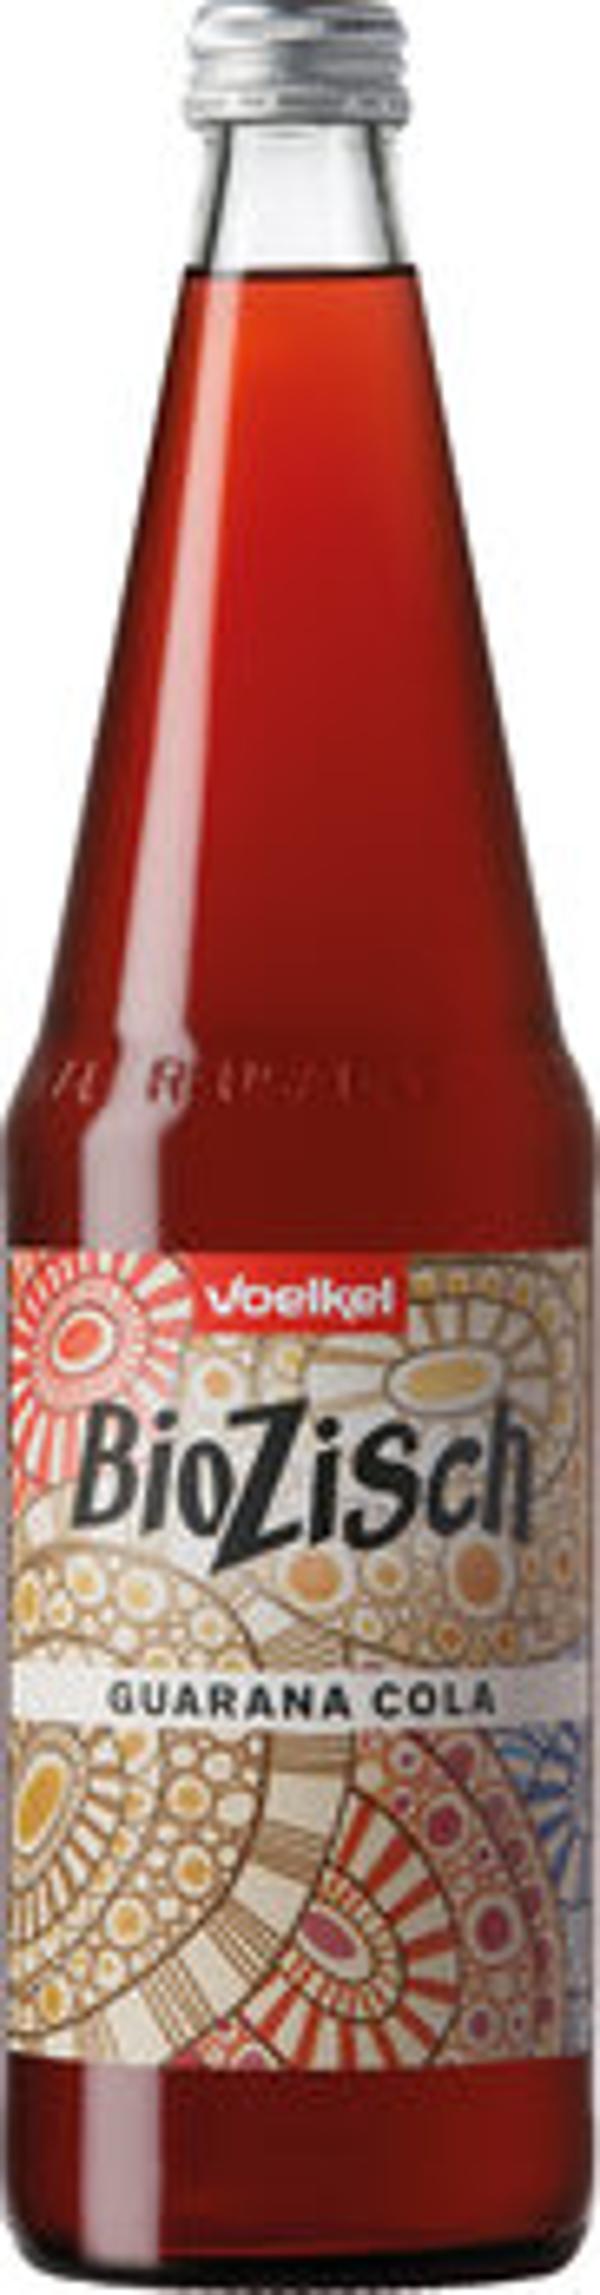 Produktfoto zu Voelkel Bio Zisch Guarana Cola 0,7l